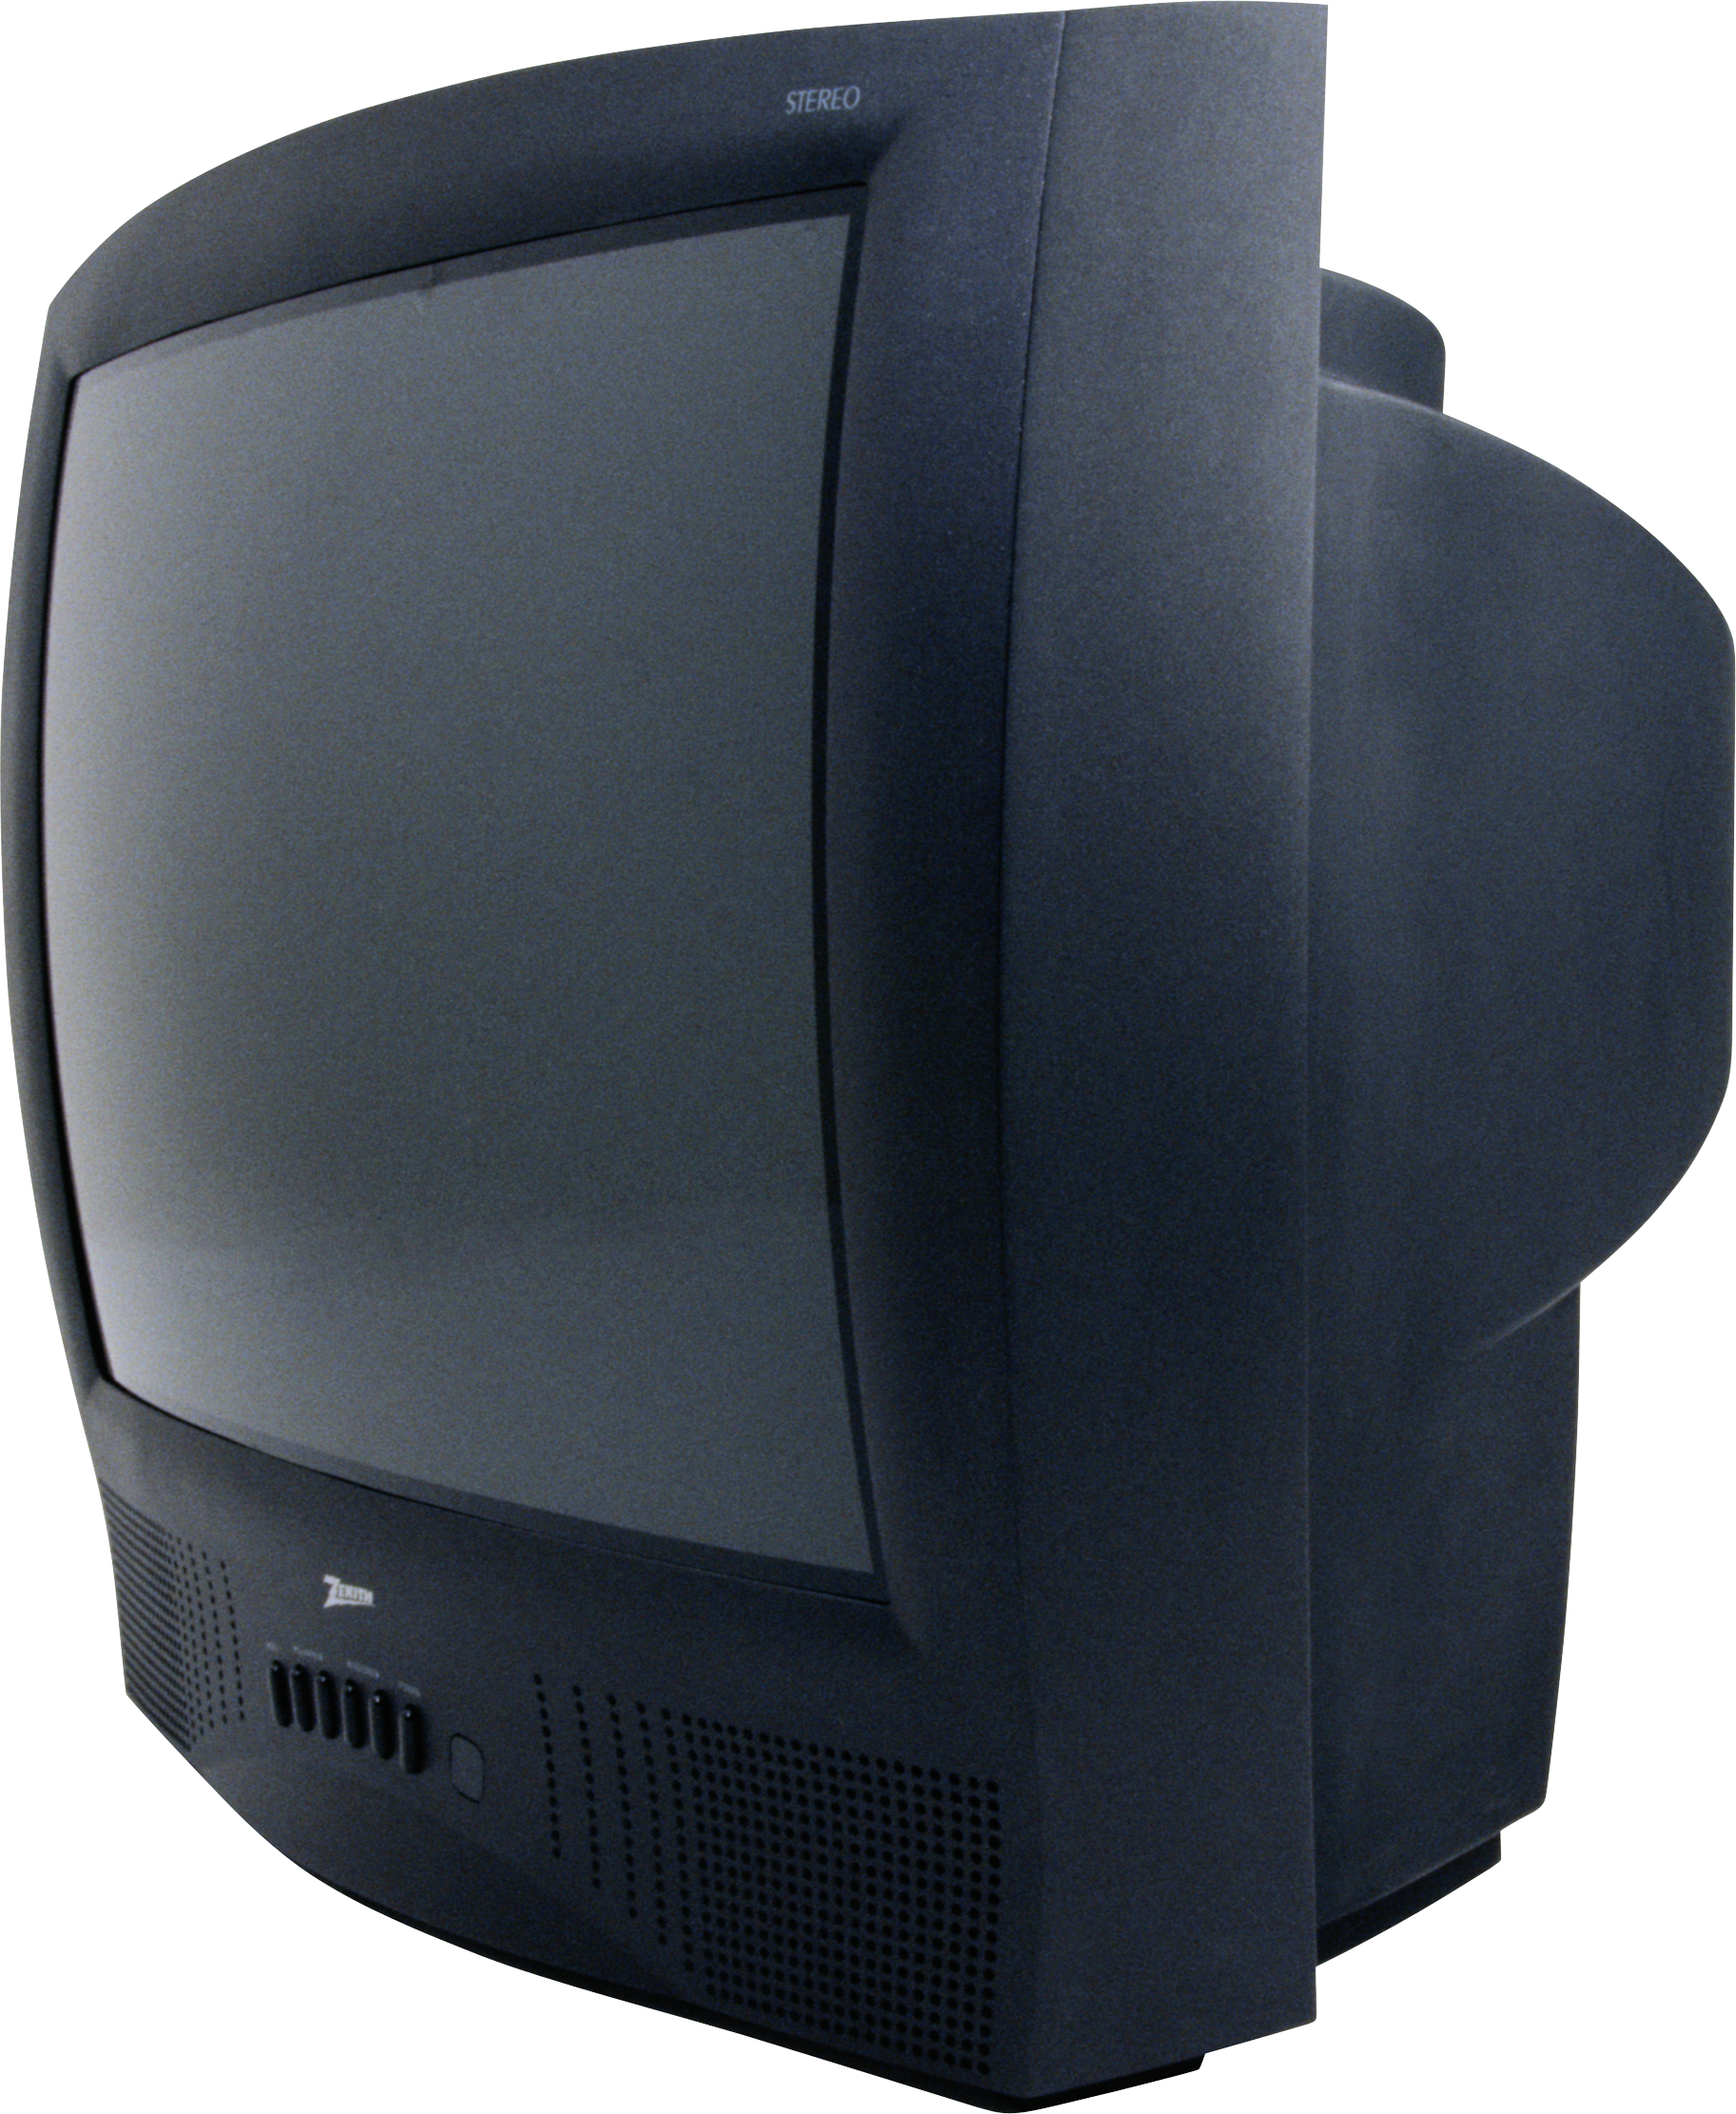 Stary telewizor